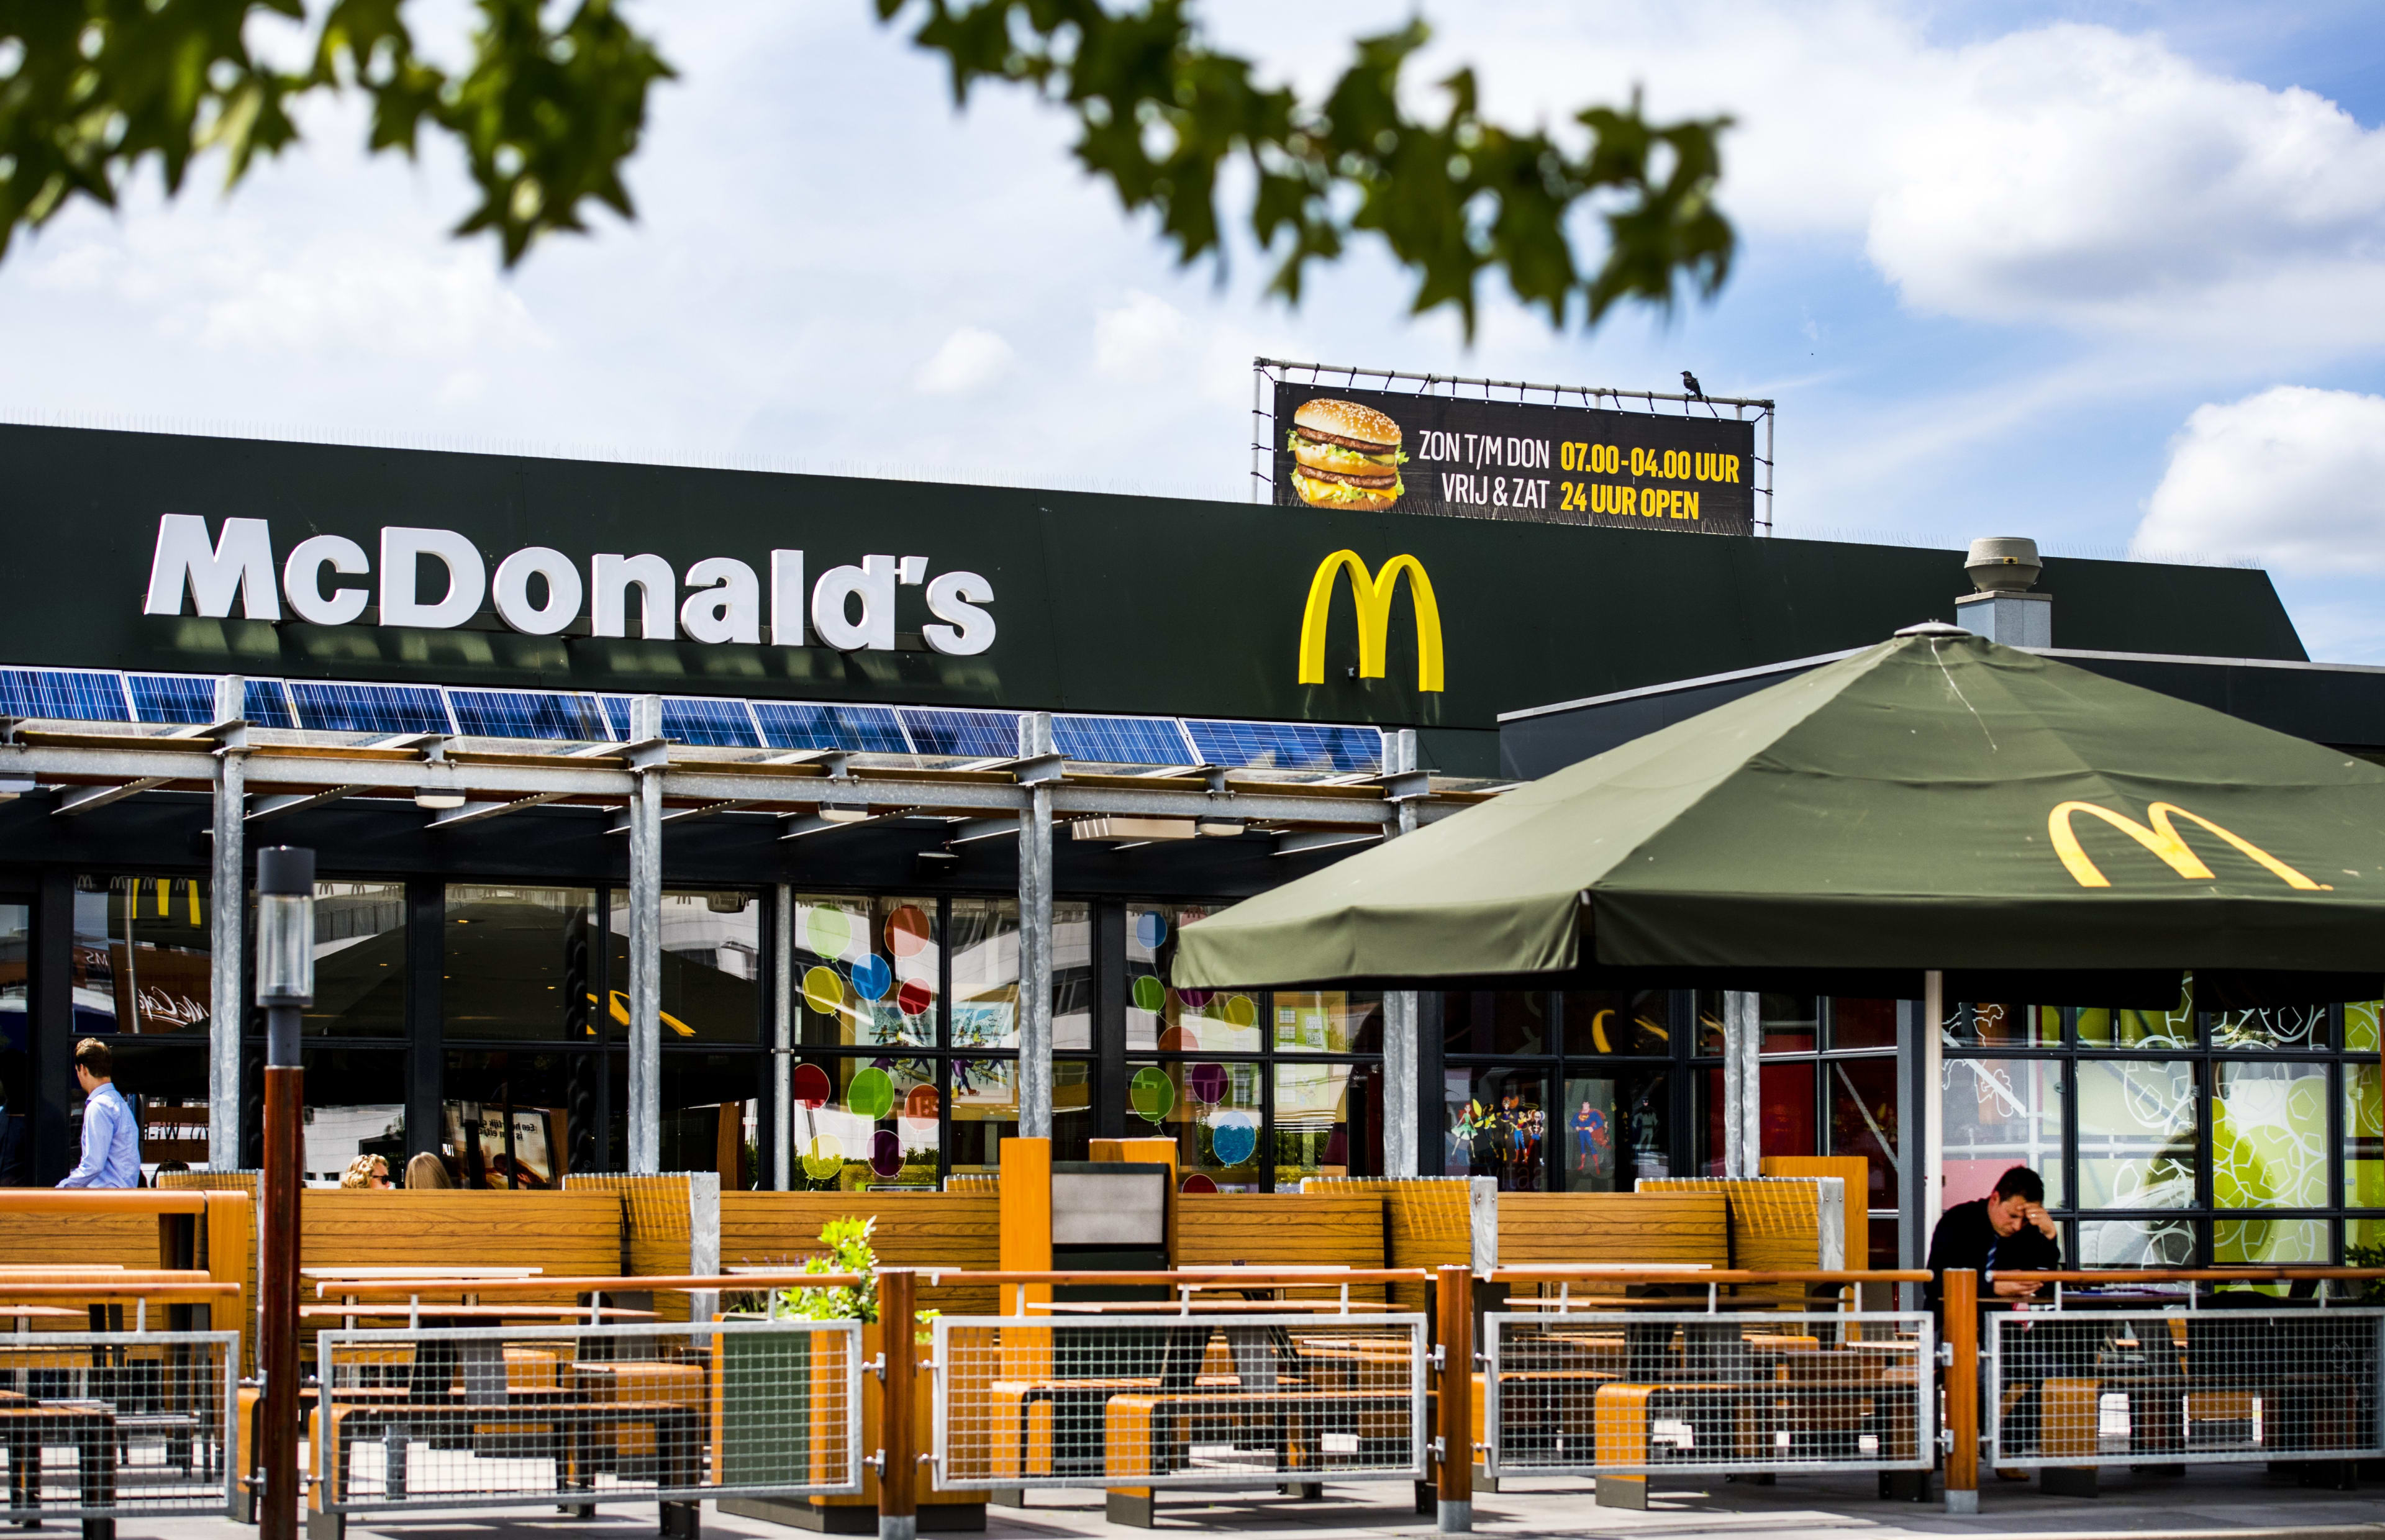 Medewerkster McDonald's arbeidsongeschikt na pakken doos friet, fastfoodketen aansprakelijk